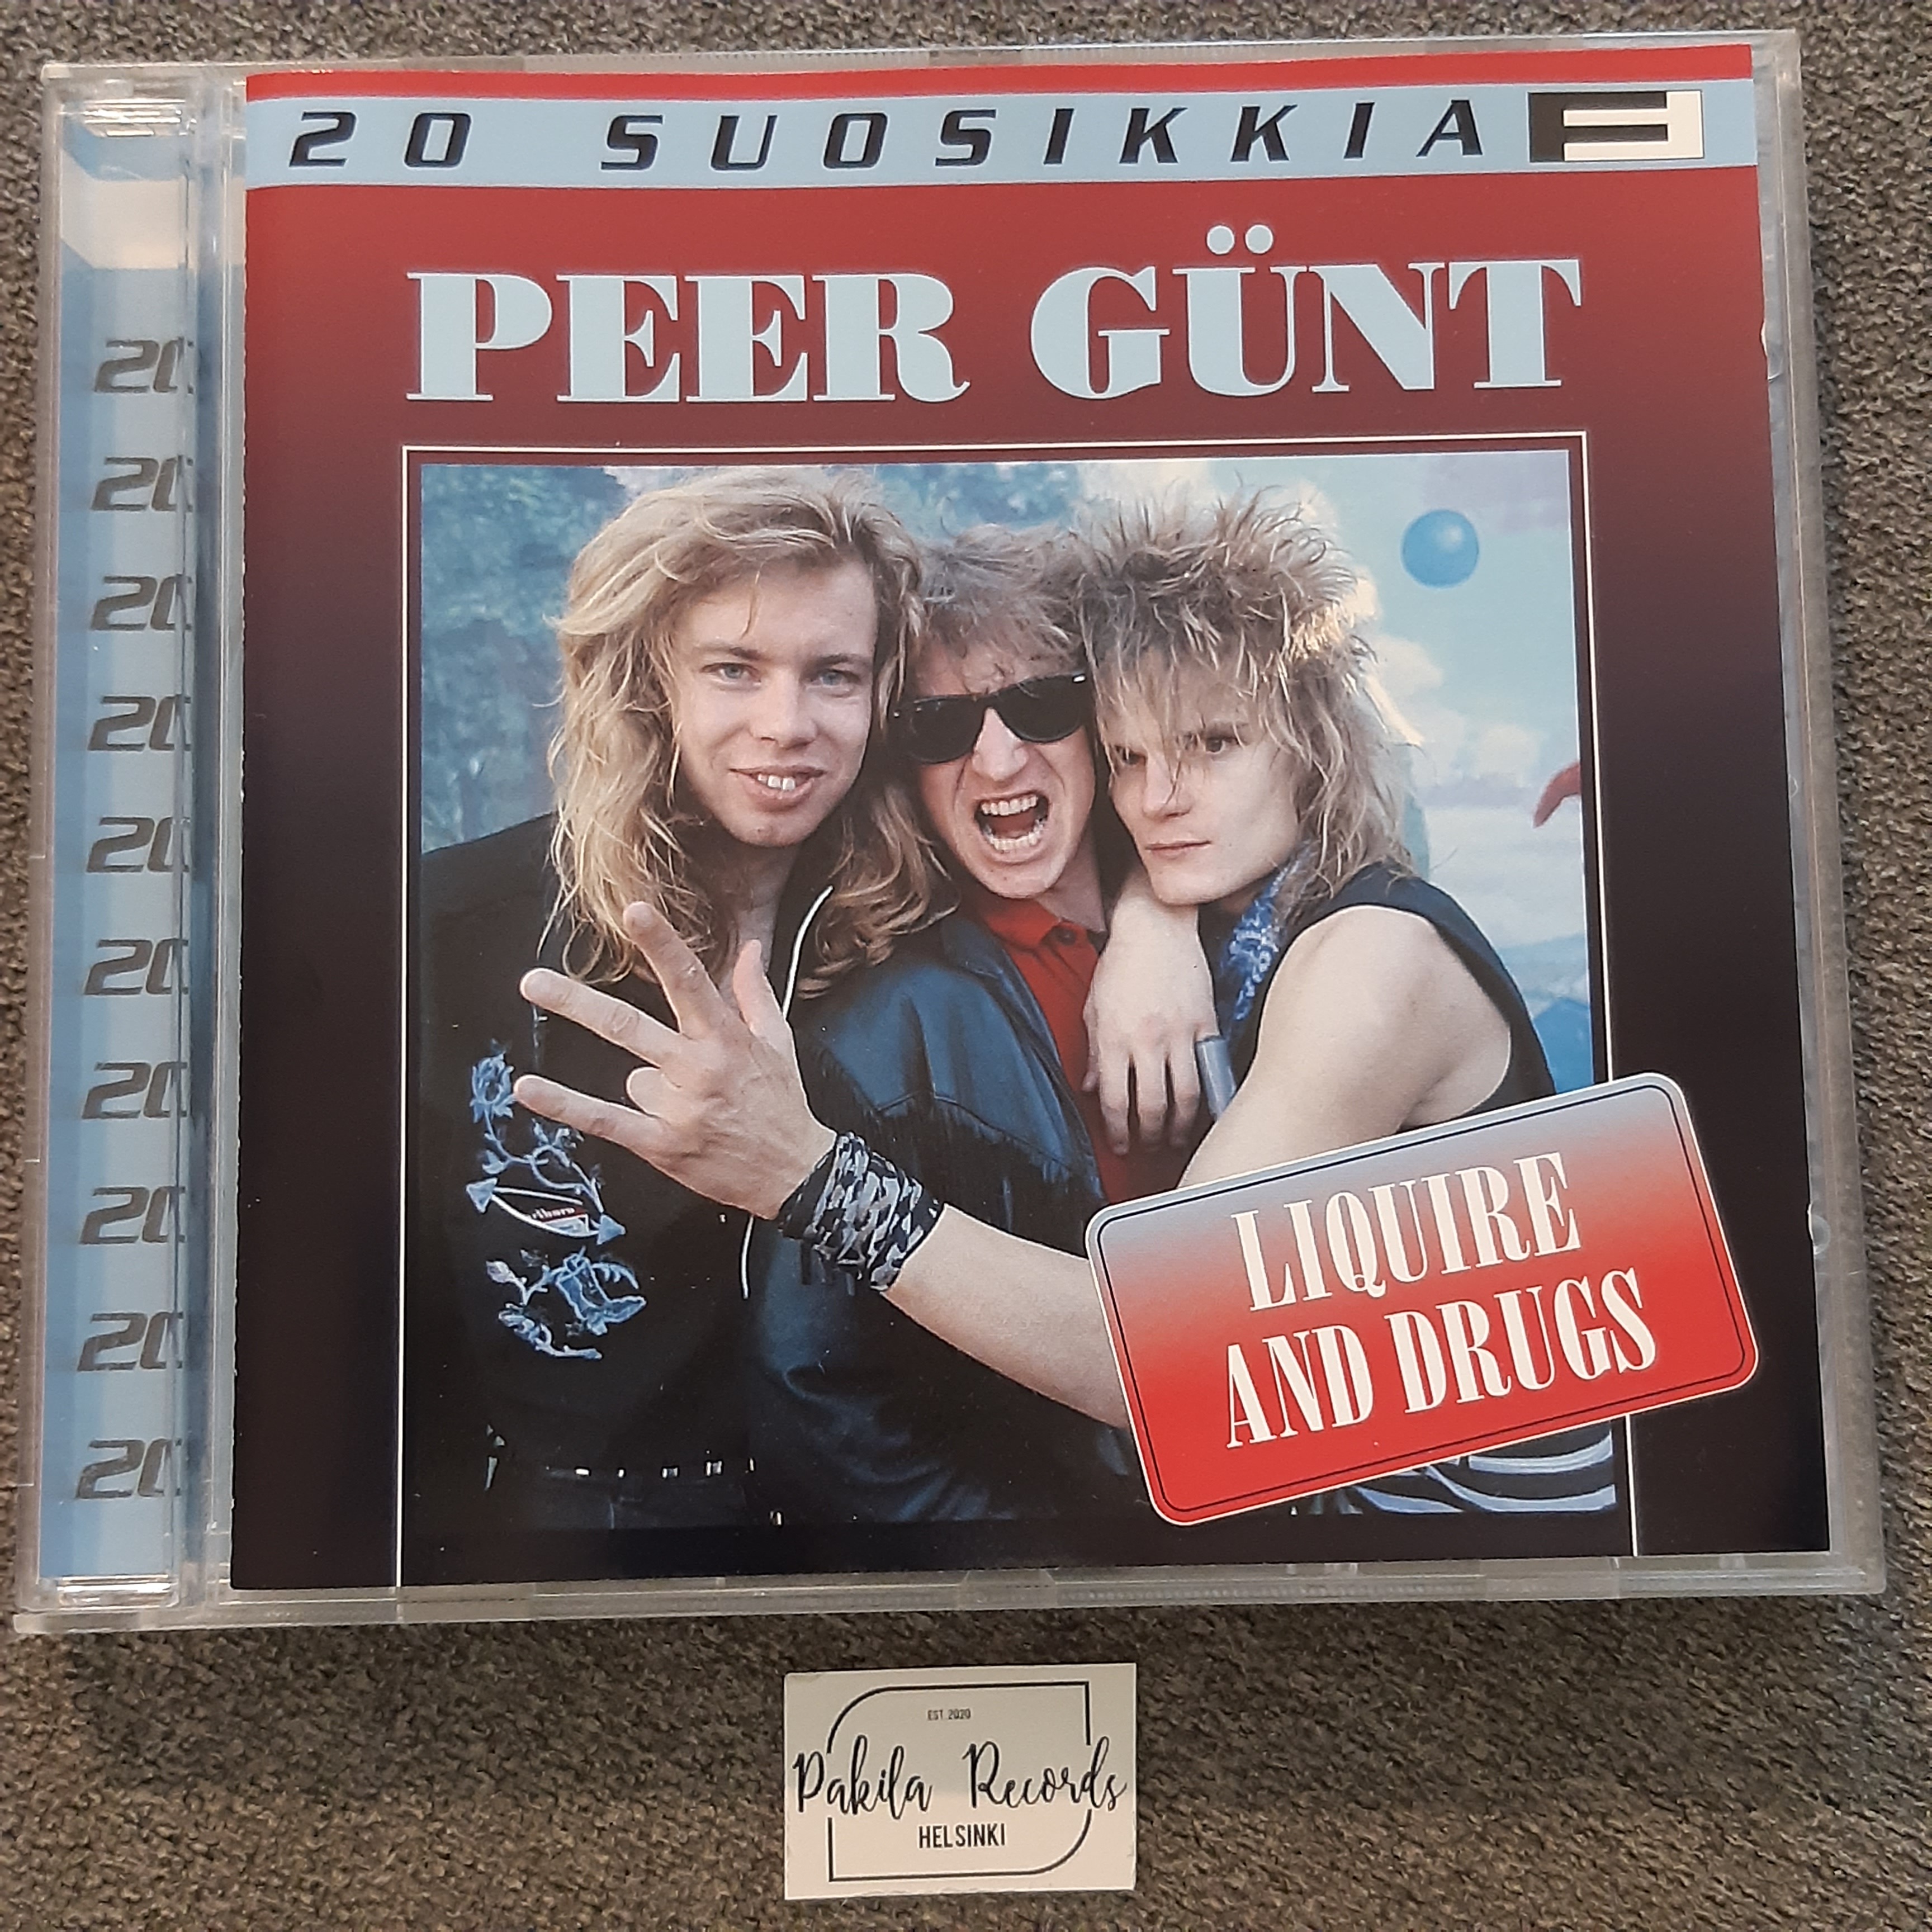 Peer Günt - 20 Suosikkia - CD (käytetty)